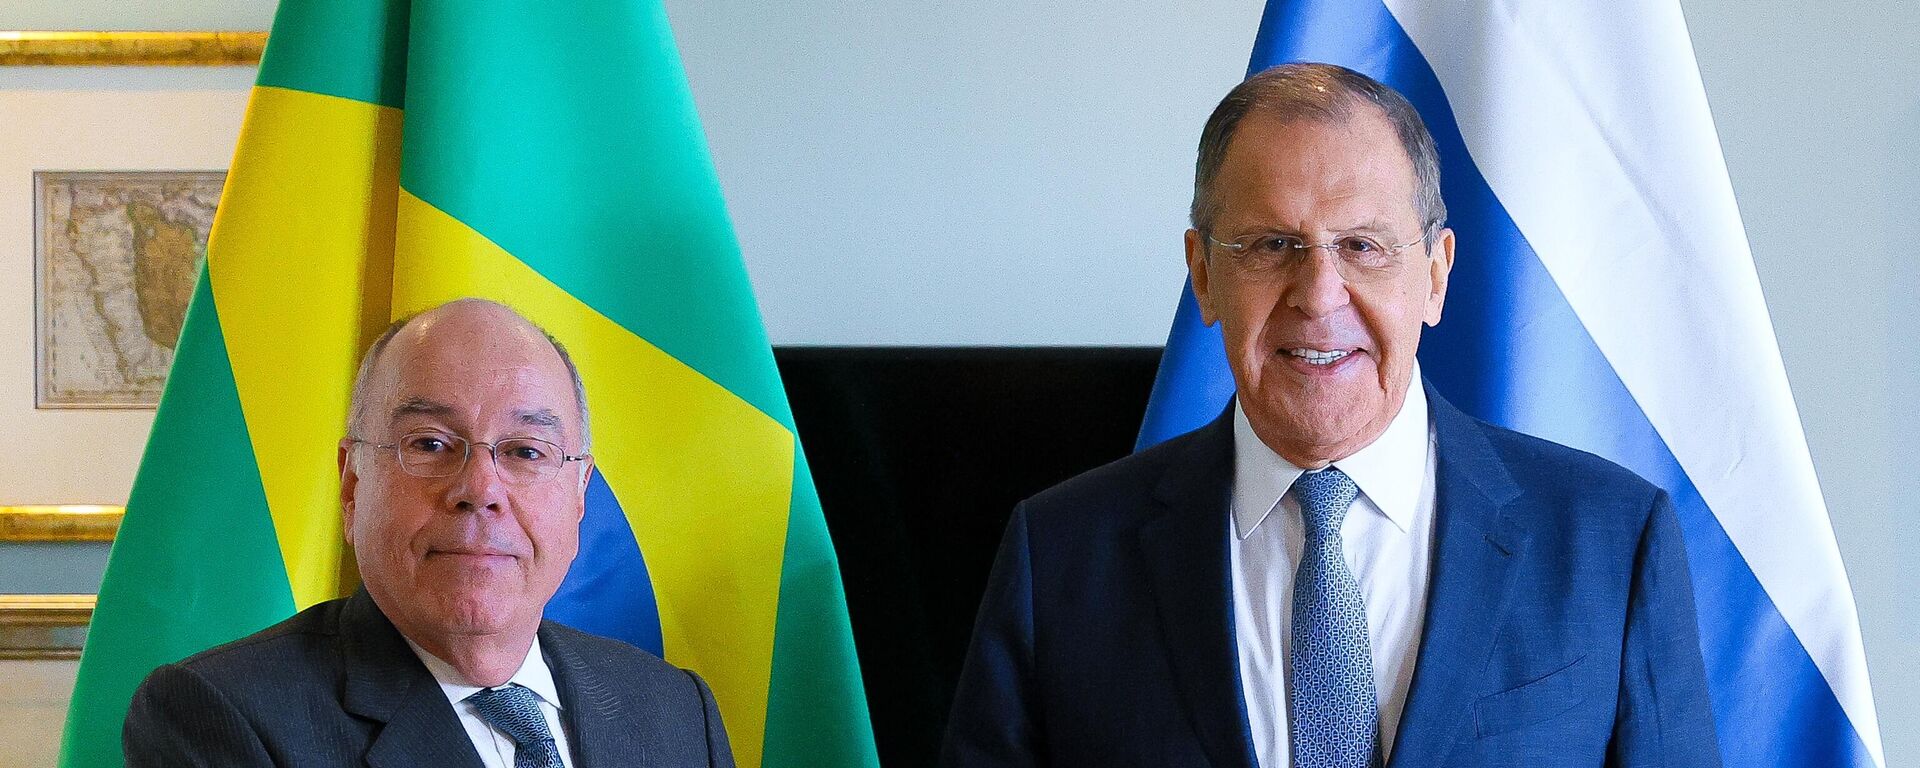 Mauro Vieira (à esquerda) e Sergei Lavrov (à direita), ministros das Relações Exteriores do Brasil e da Rússia, respectivamente, se cumprimentam no âmbito de chanceleres dos Estados-membros do BRICS na Cidade do Cabo, África do Sul, 2 de junho de 2023 - Sputnik Brasil, 1920, 02.06.2023